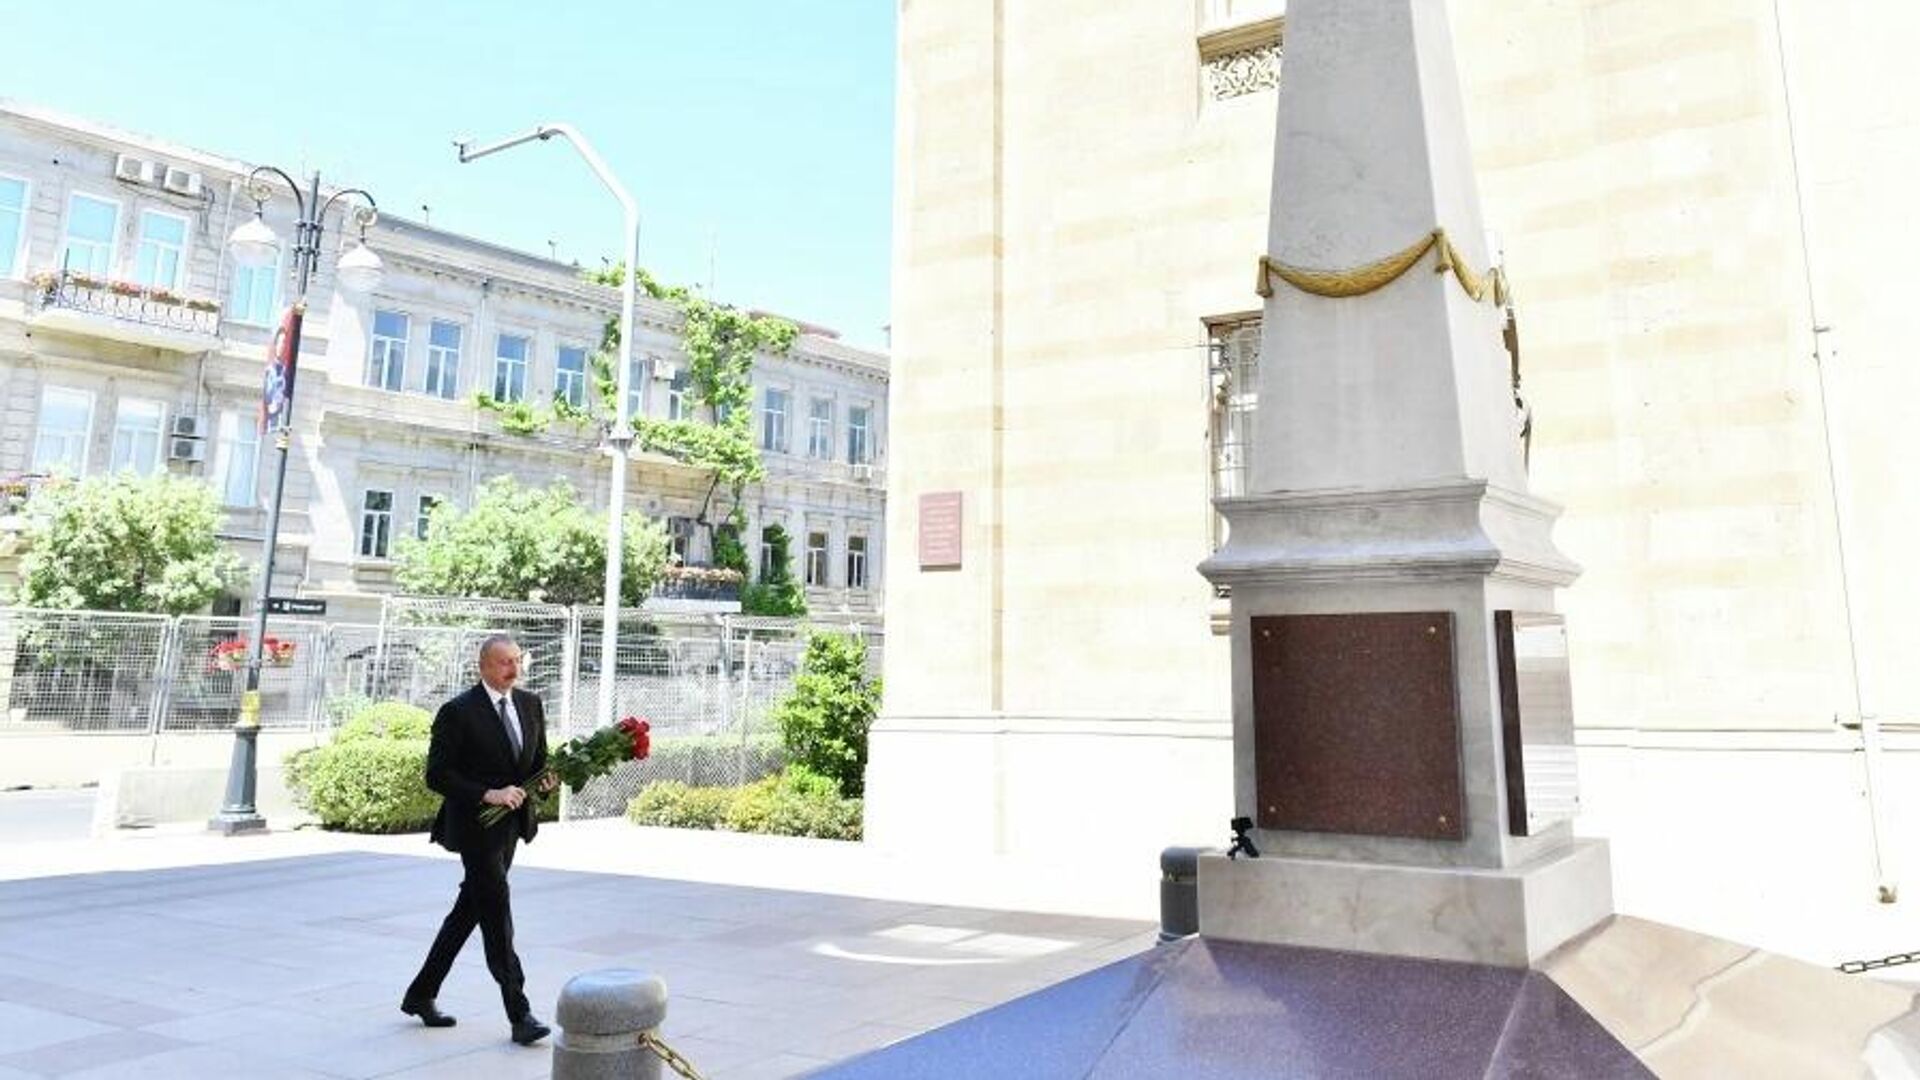 
Президент Ильхам Алиев посетил памятник, воздвигнутый в честь АДР в Баку - Sputnik Азербайджан, 1920, 28.05.2022